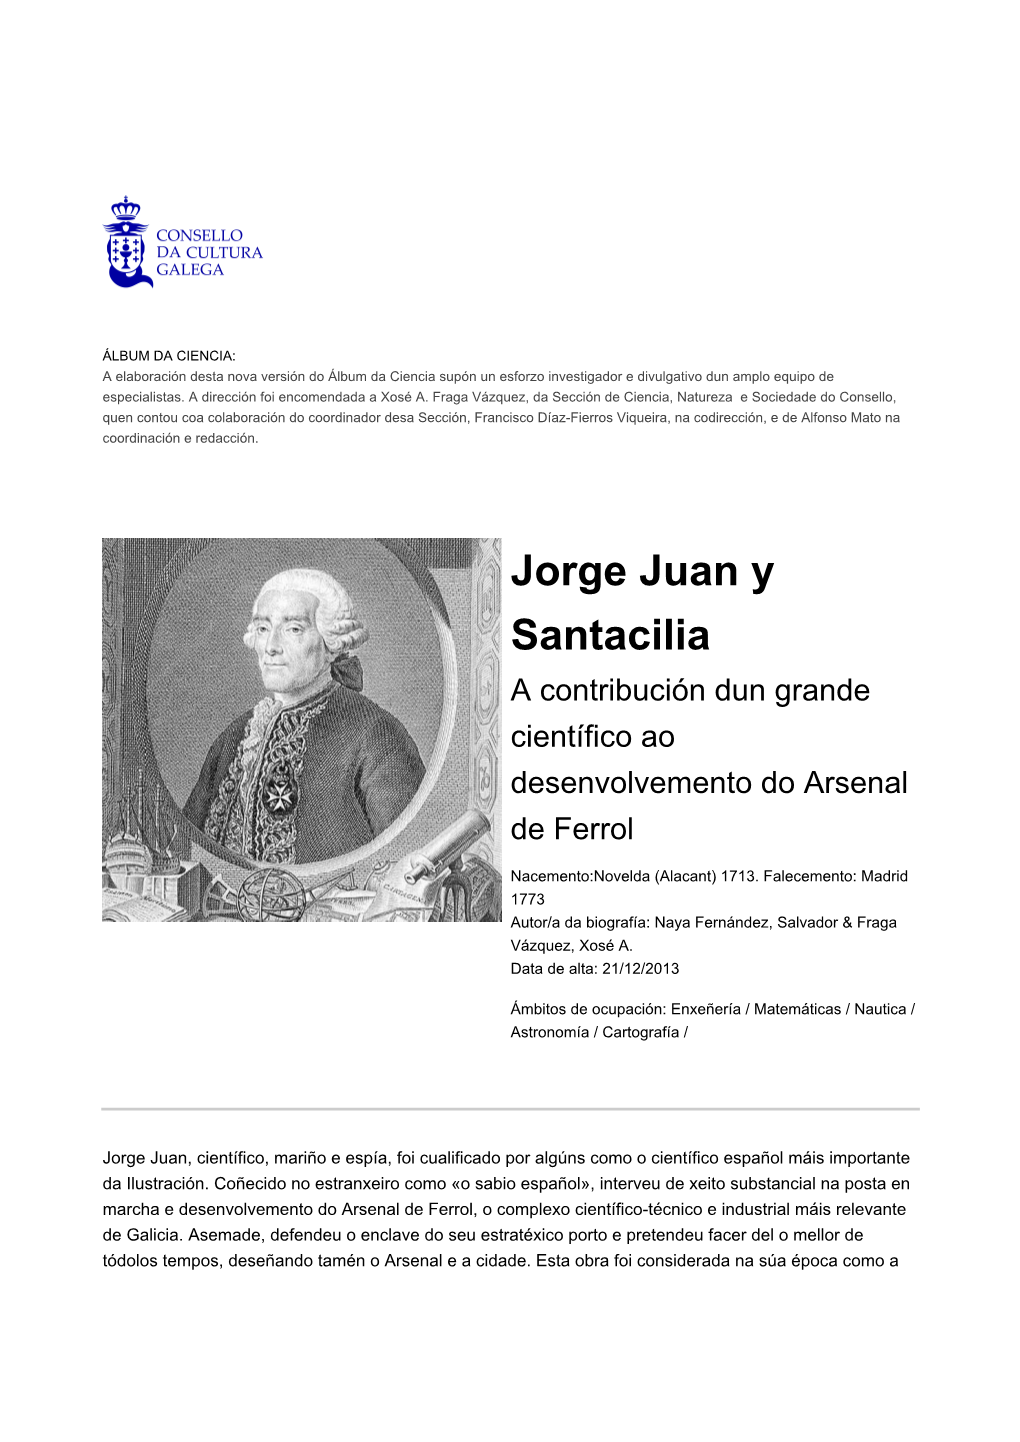 Jorge Juan Y Santacilia No Álbum Da Ciencia